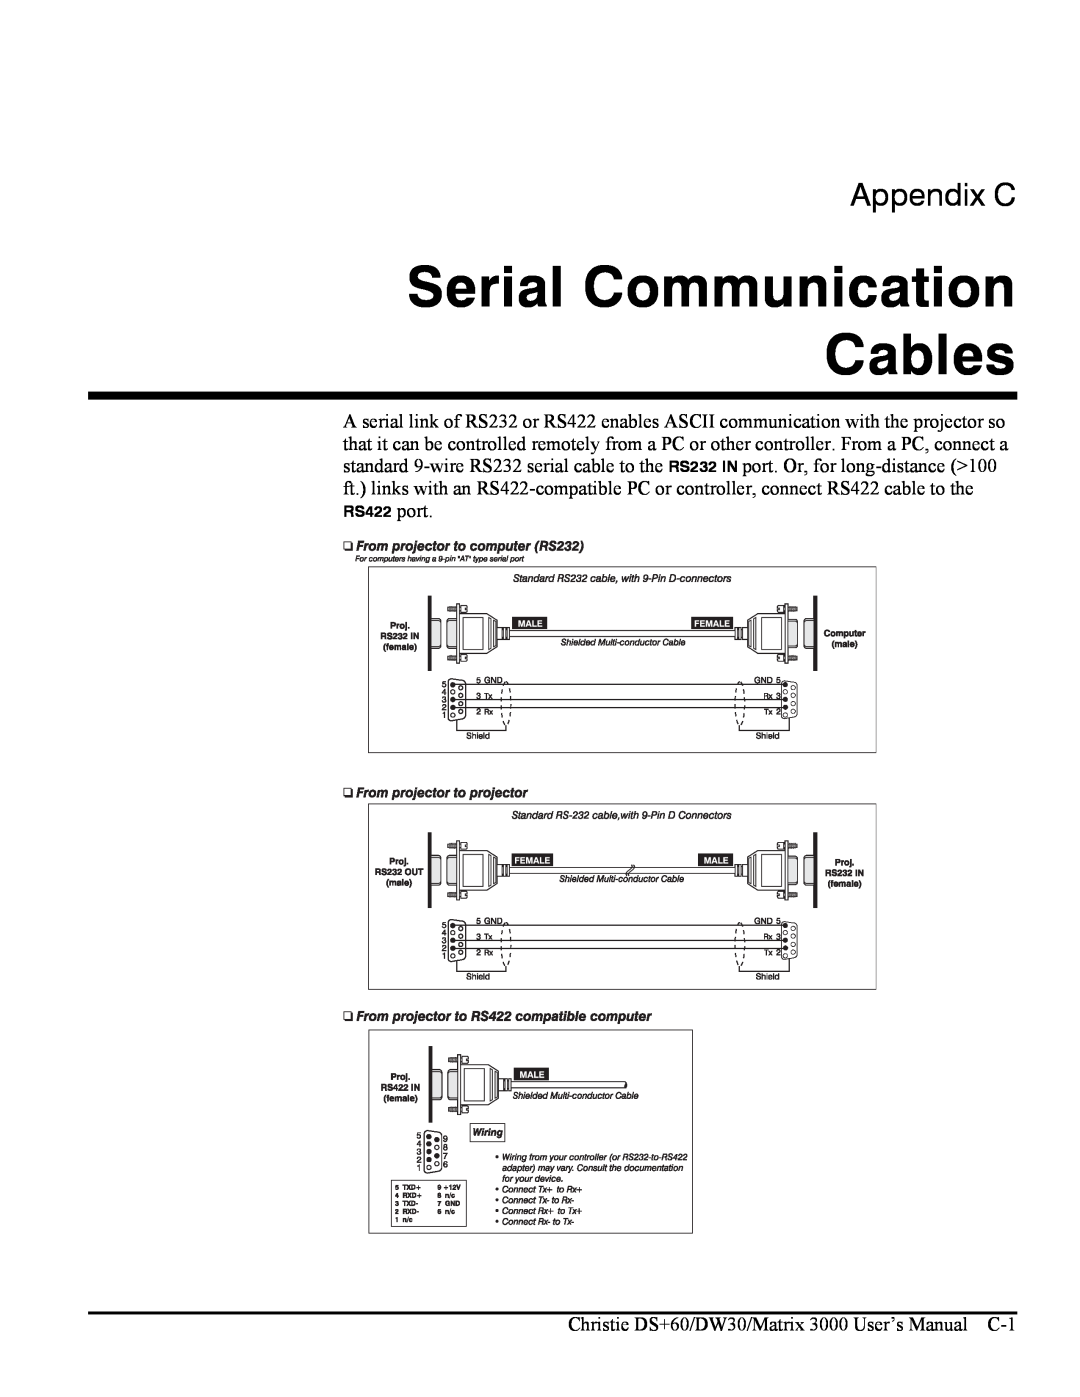 Texas Instruments MATRIX 3000, DW30 user manual Serial Communication Cables, Appendix C 